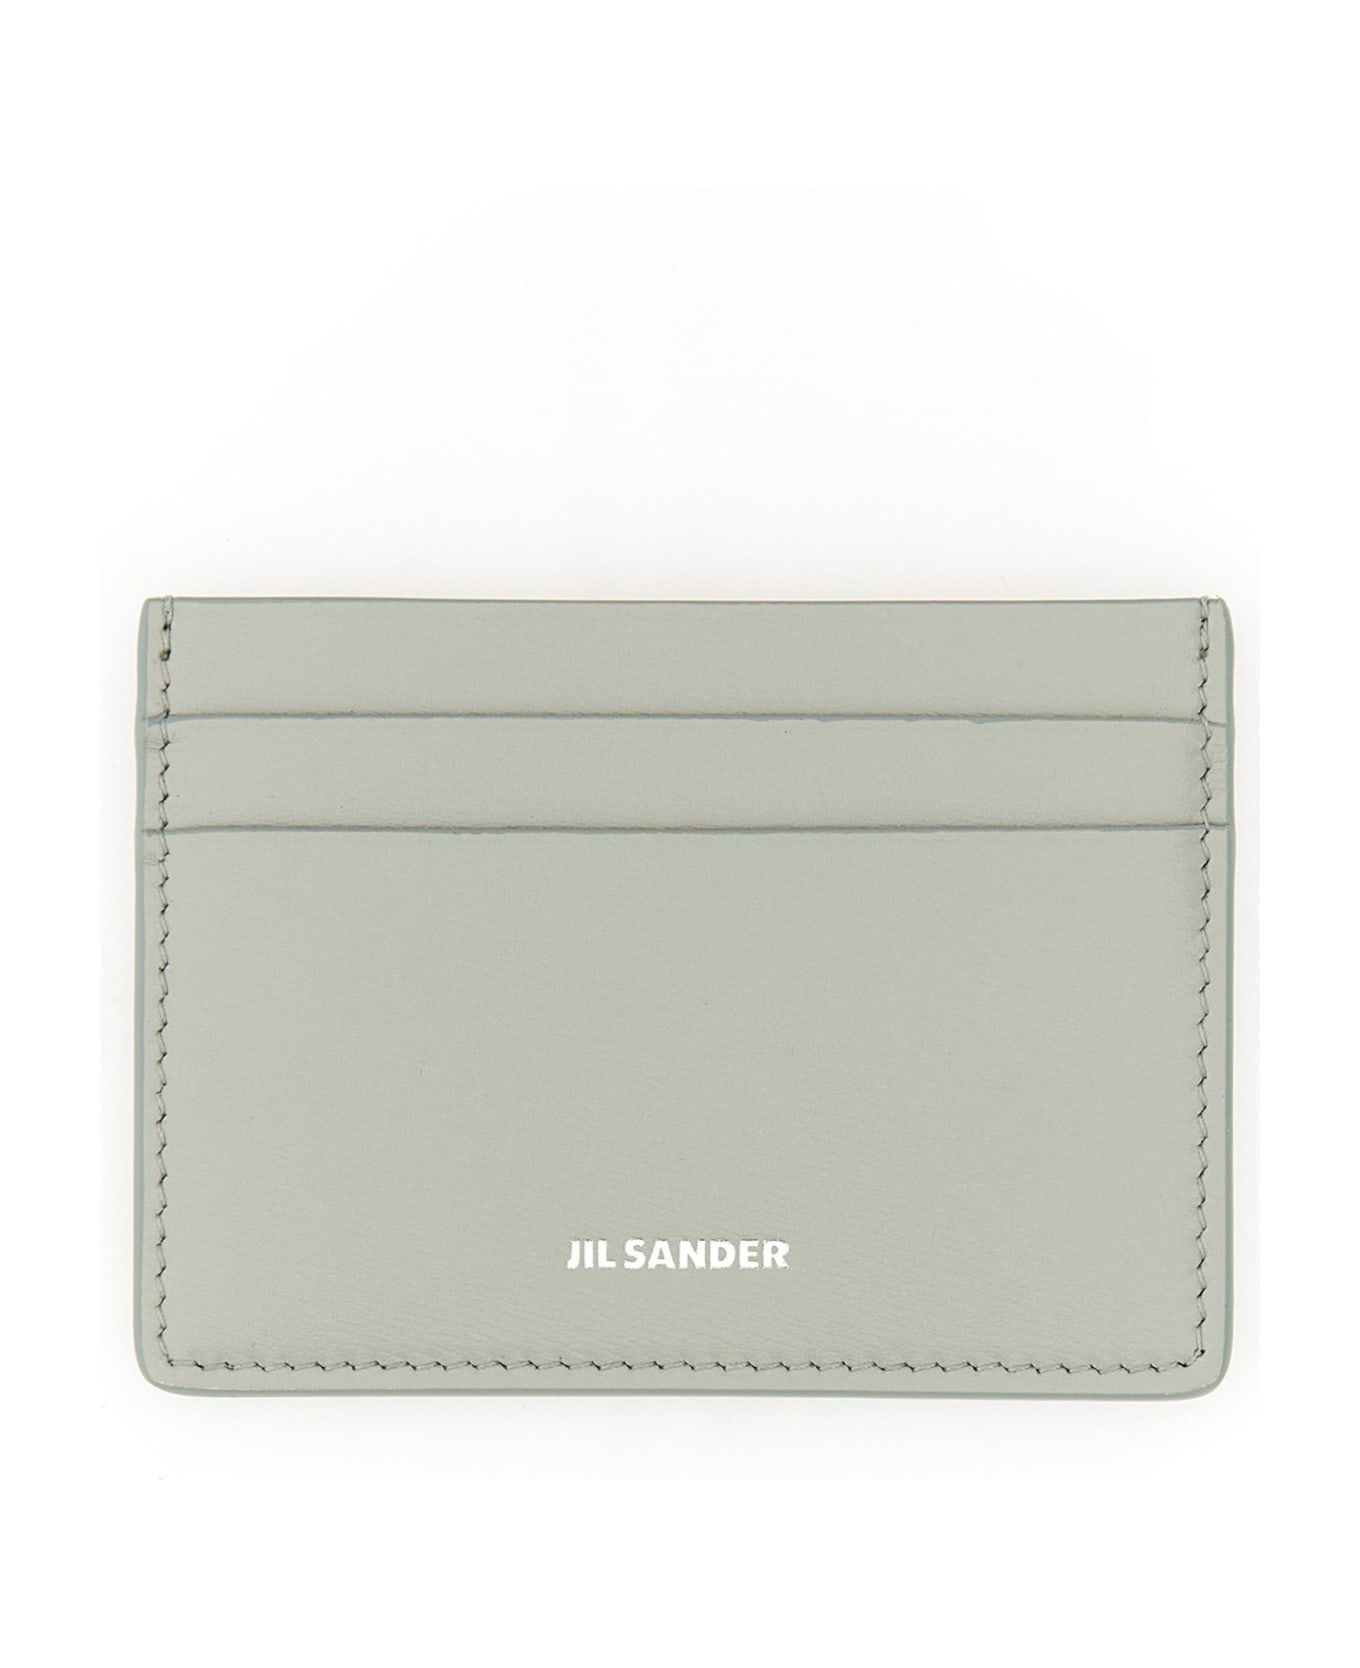 Jil Sander Leather Card Holder 財布